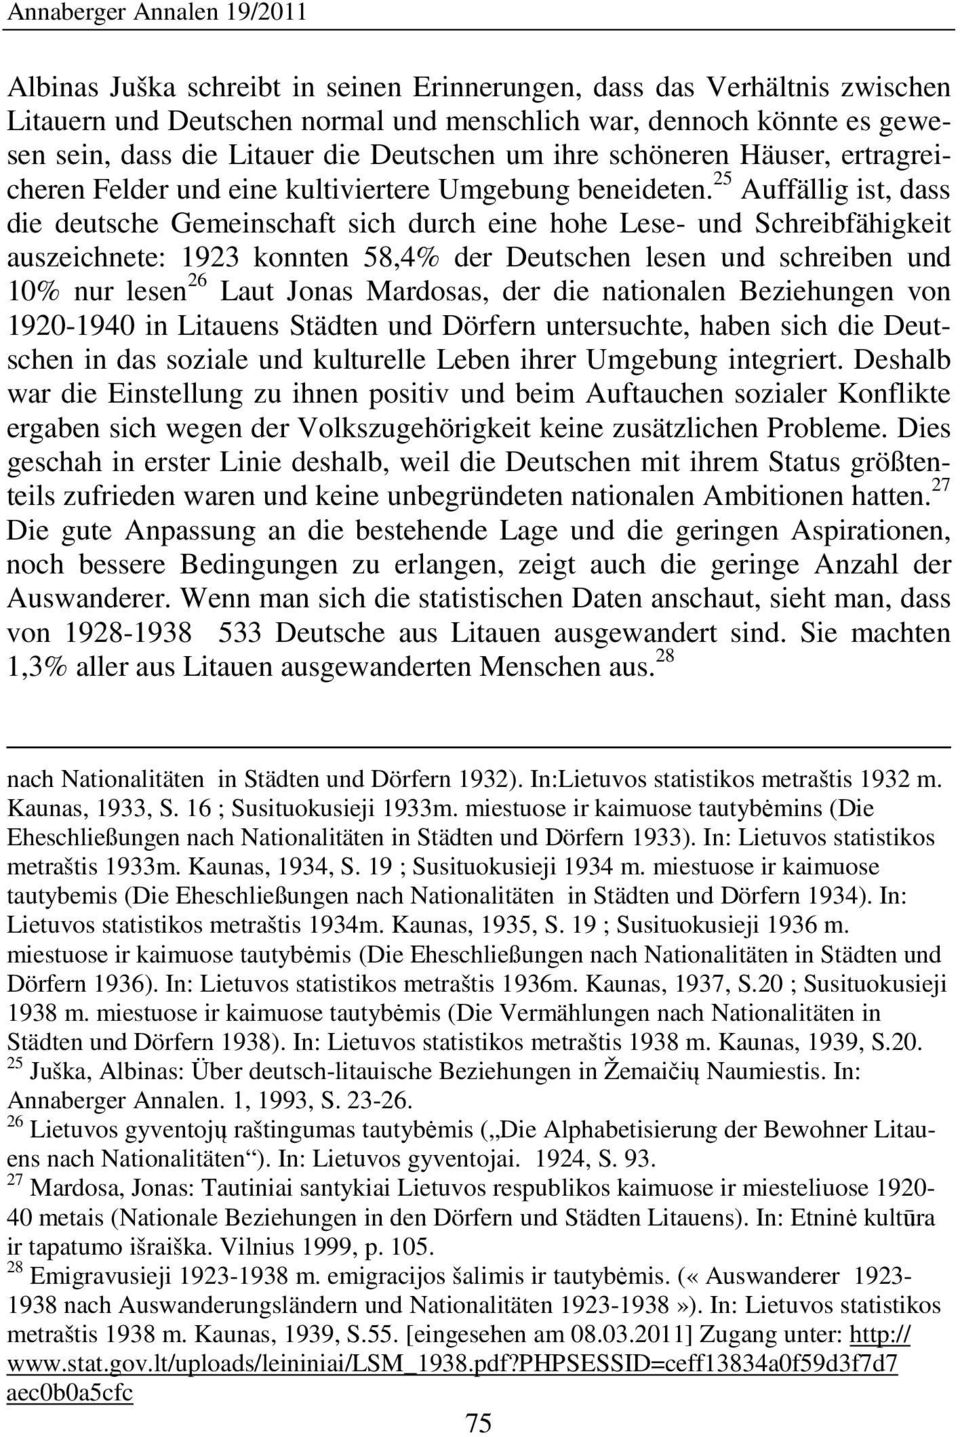 25 Auffällig ist, dass die deutsche Gemeinschaft sich durch eine hohe Lese- und Schreibfähigkeit auszeichnete: 1923 konnten 58,4% der Deutschen lesen und schreiben und 10% nur lesen 26 Laut Jonas